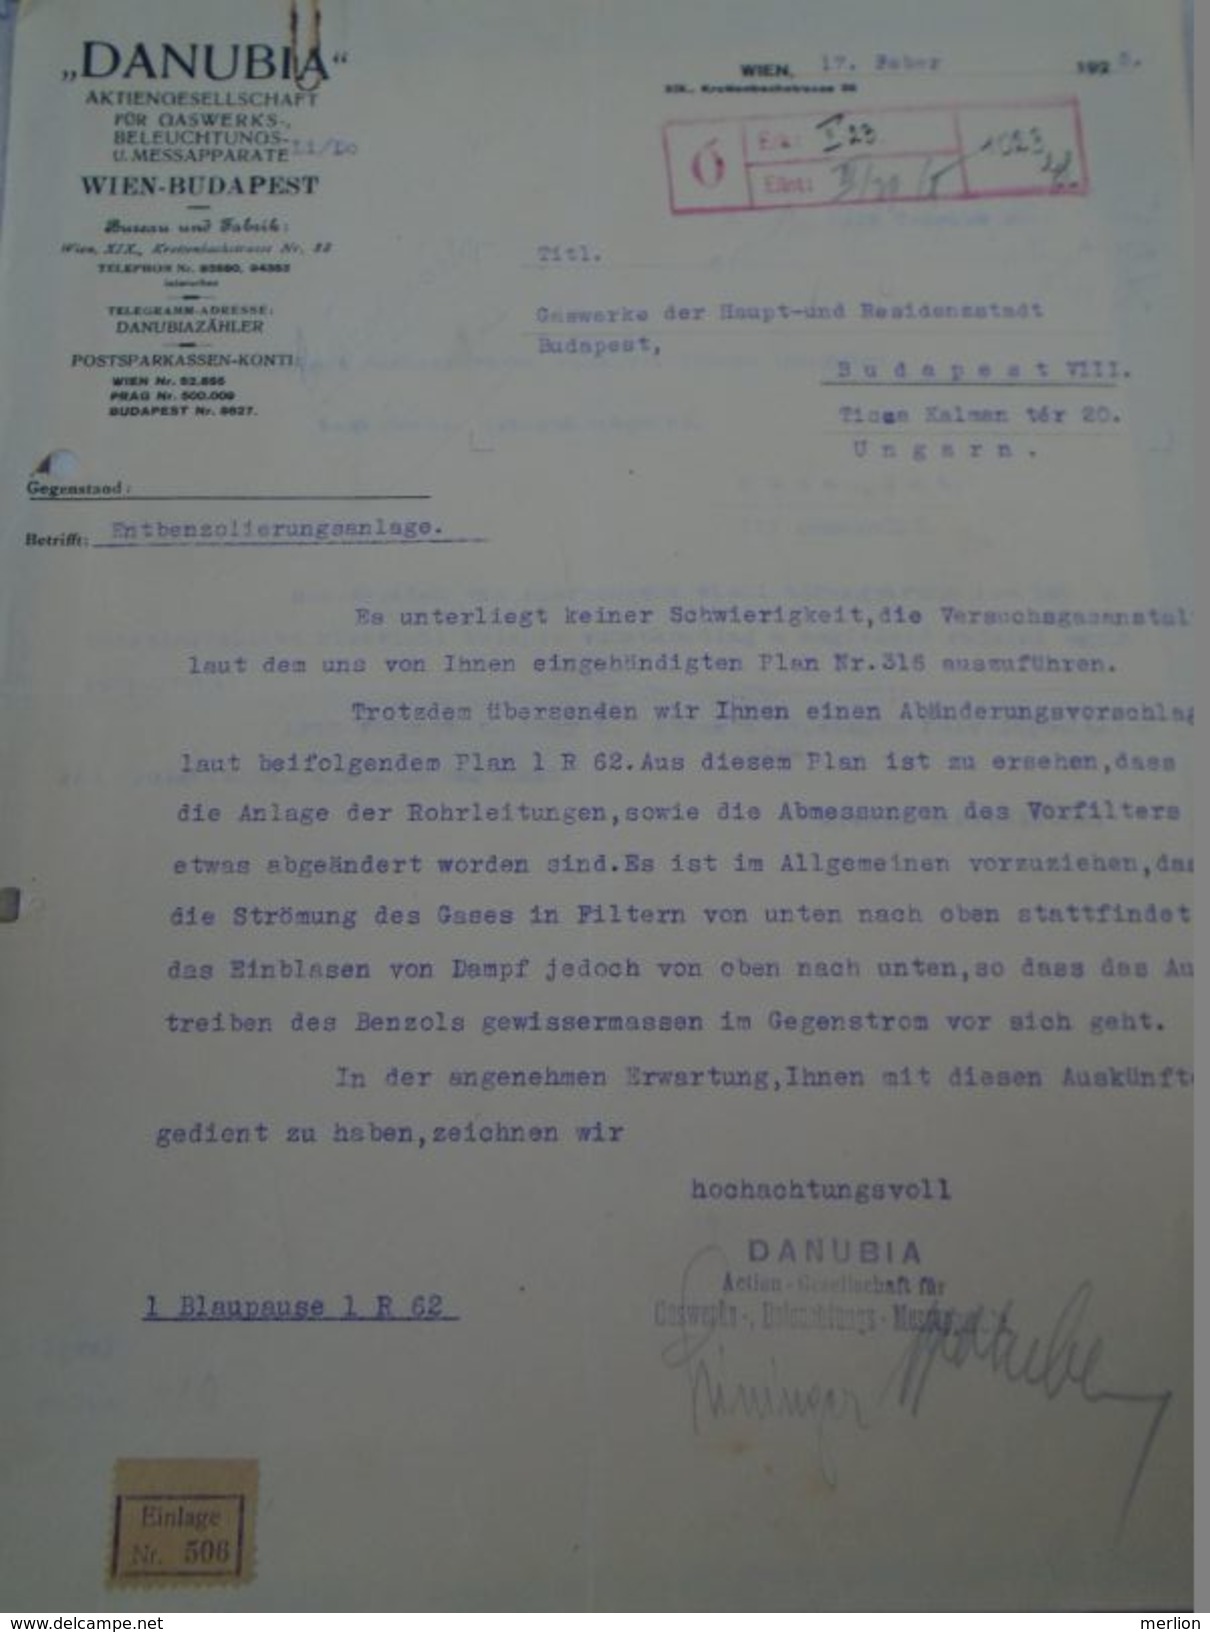 AD036.22 Old Letter   Austria -DANUBIA -WIEN-BUDAPEST -GASWERKS -1925 -Gaswerke Budapest - Oostenrijk